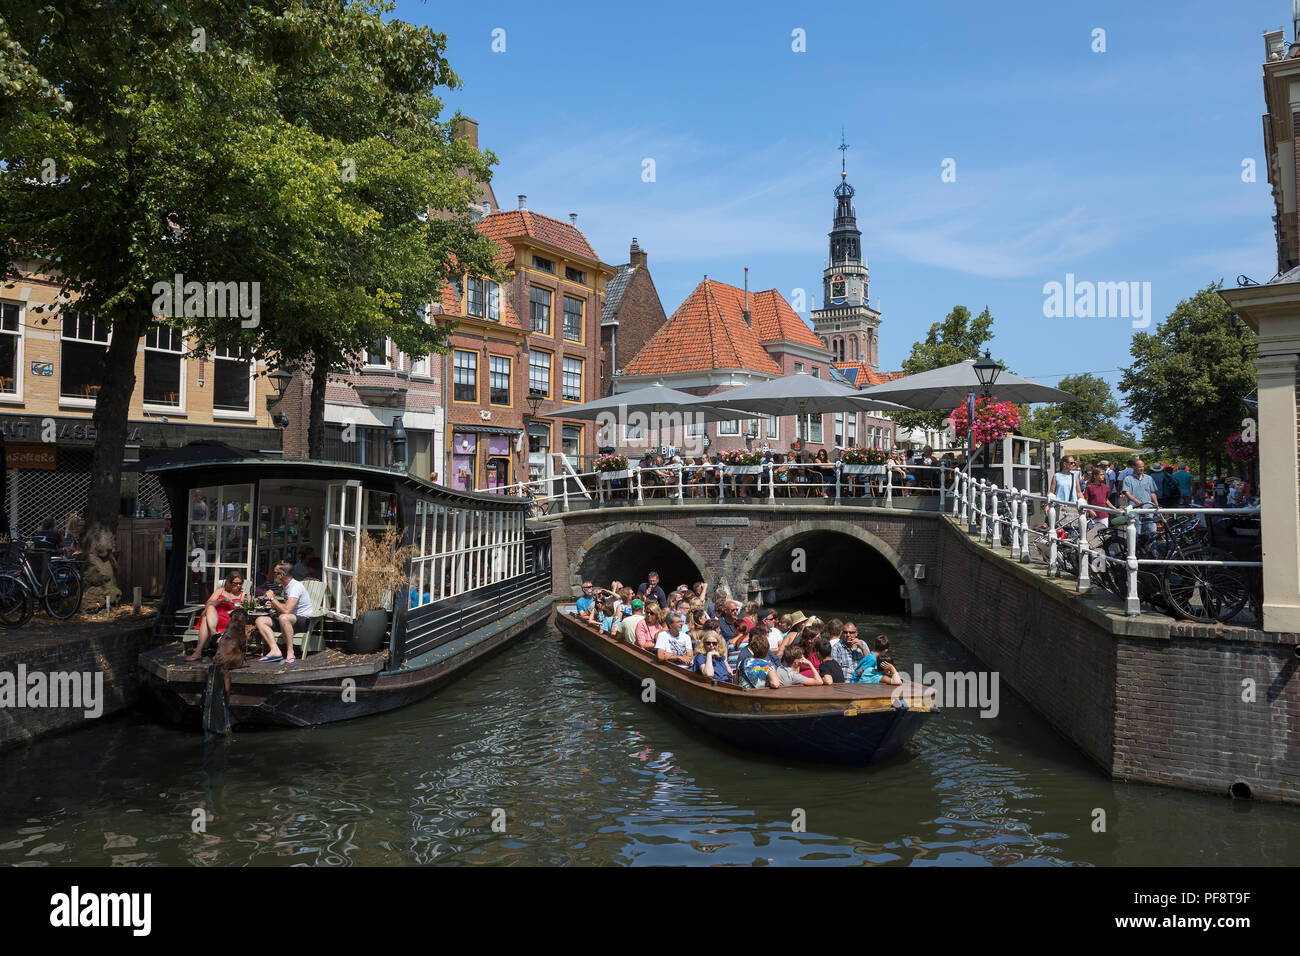 Alkmaar, Pays-Bas - 20 juillet 2018 : Sites vue voyant l'excursion en bateau dans le centre historique d'Alkmaar Banque D'Images